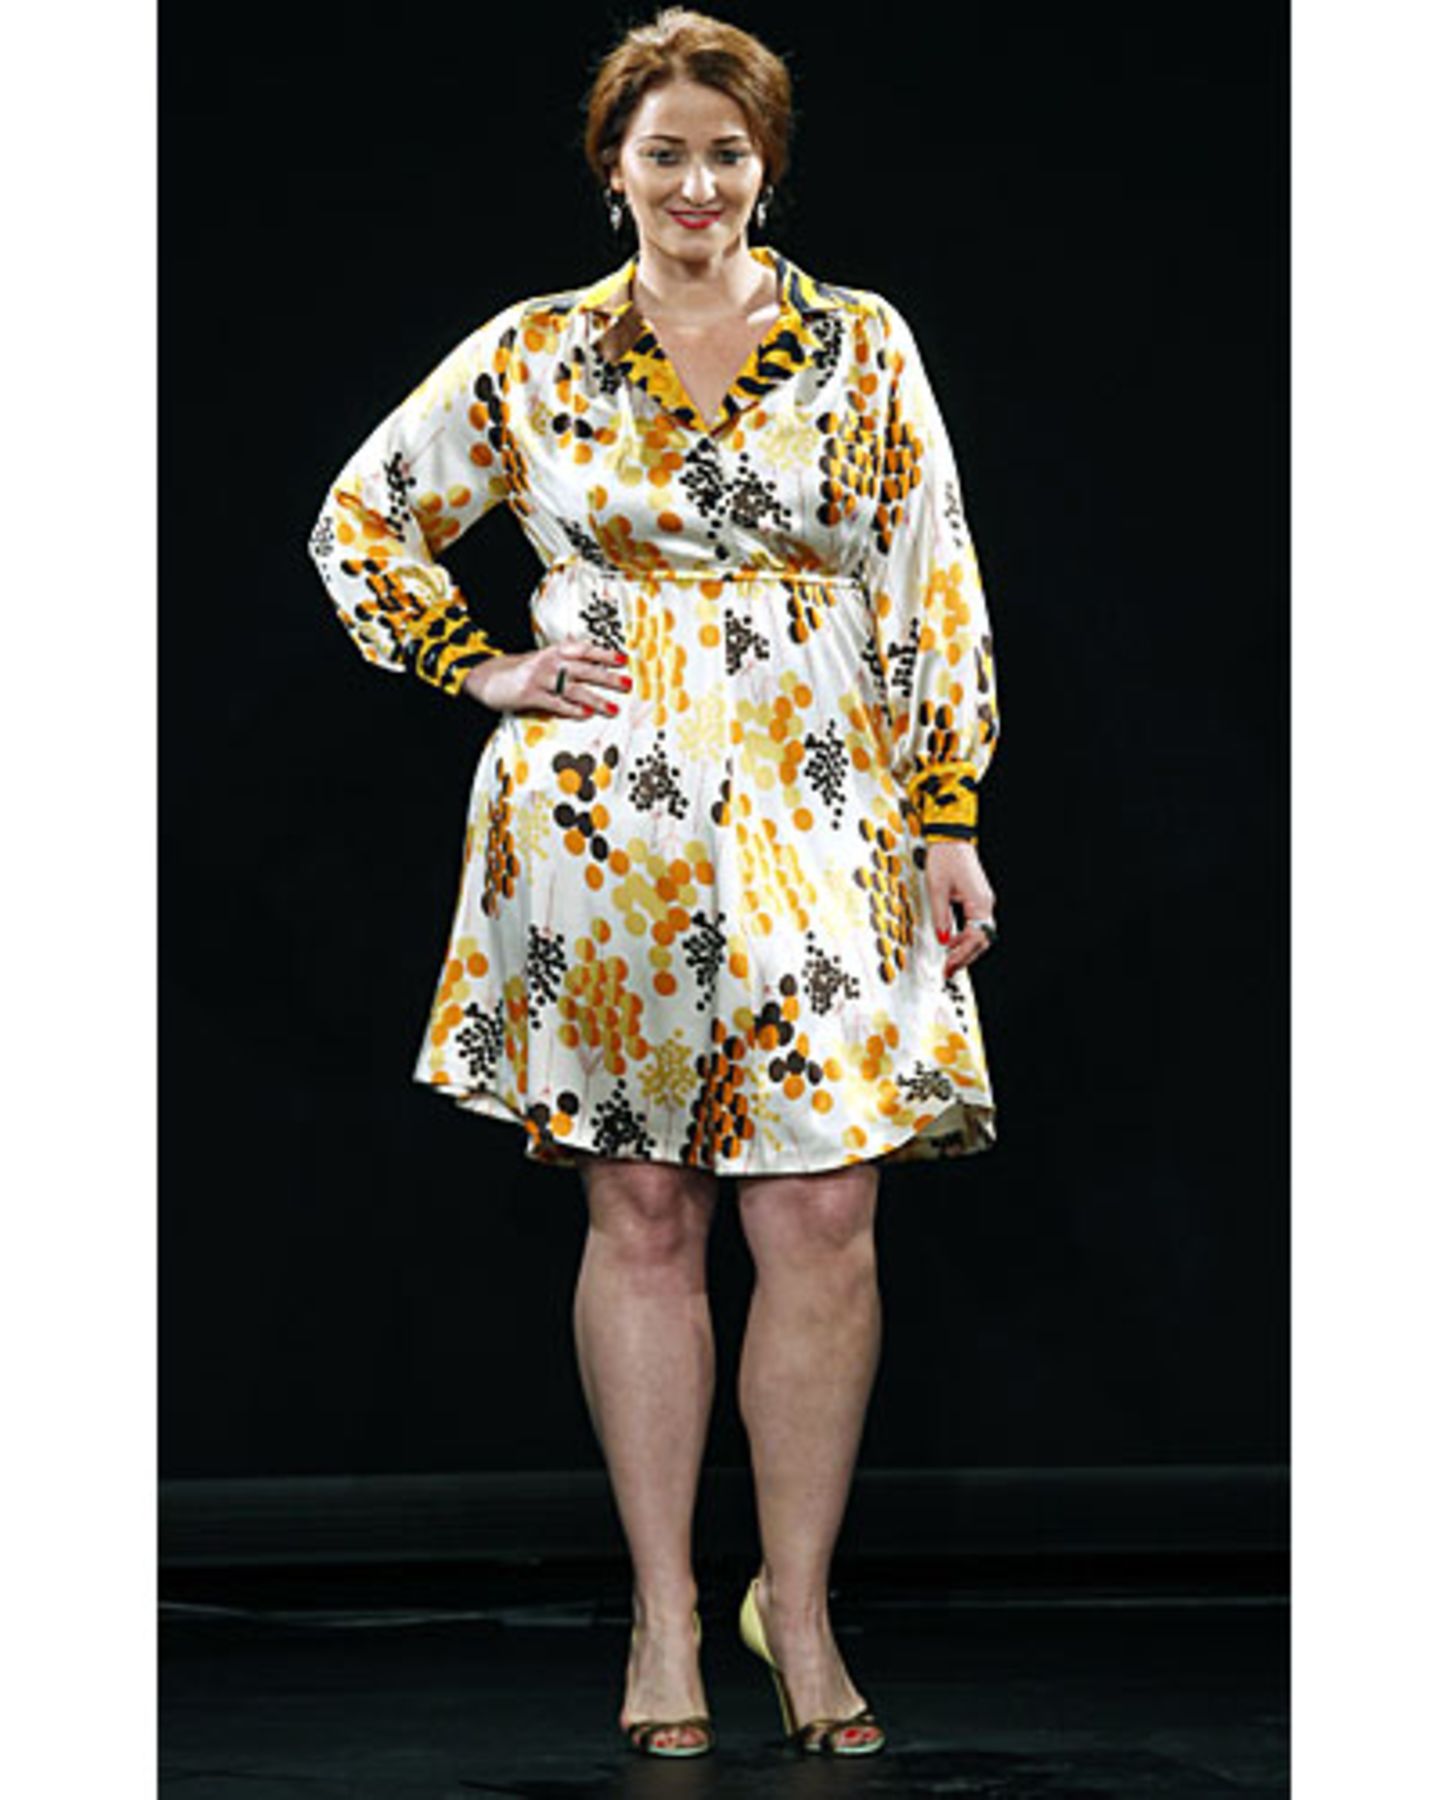 Typisch für die Entwürfe der Designerin, die selbst Größe 48 trägt, sind florale Muster - und toll geschnittene Kleider.